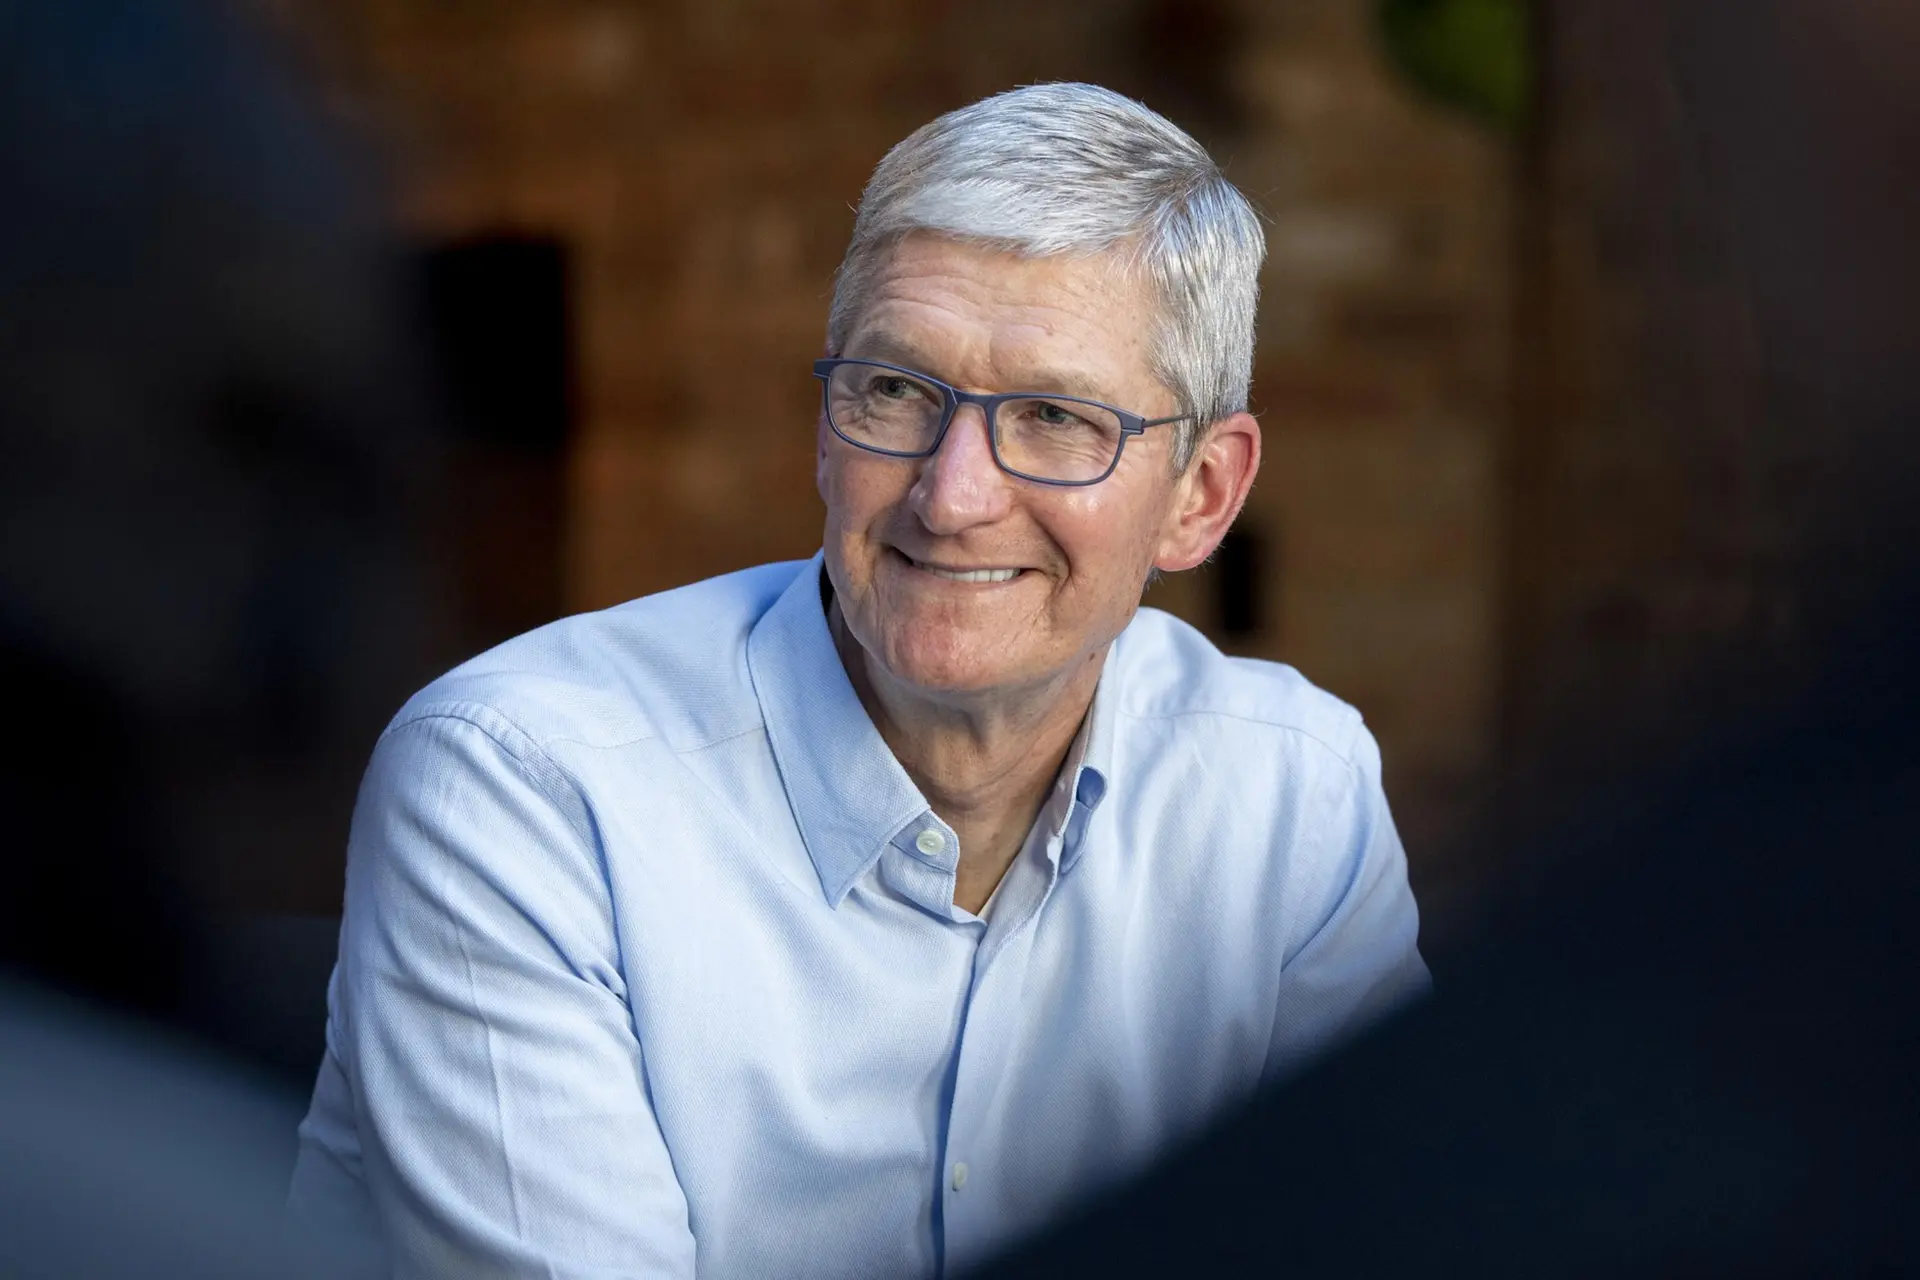 لبخند تیم کوک با عینک و لباس آبی کمرنگ / Tim Cook مدیرعامل اپل